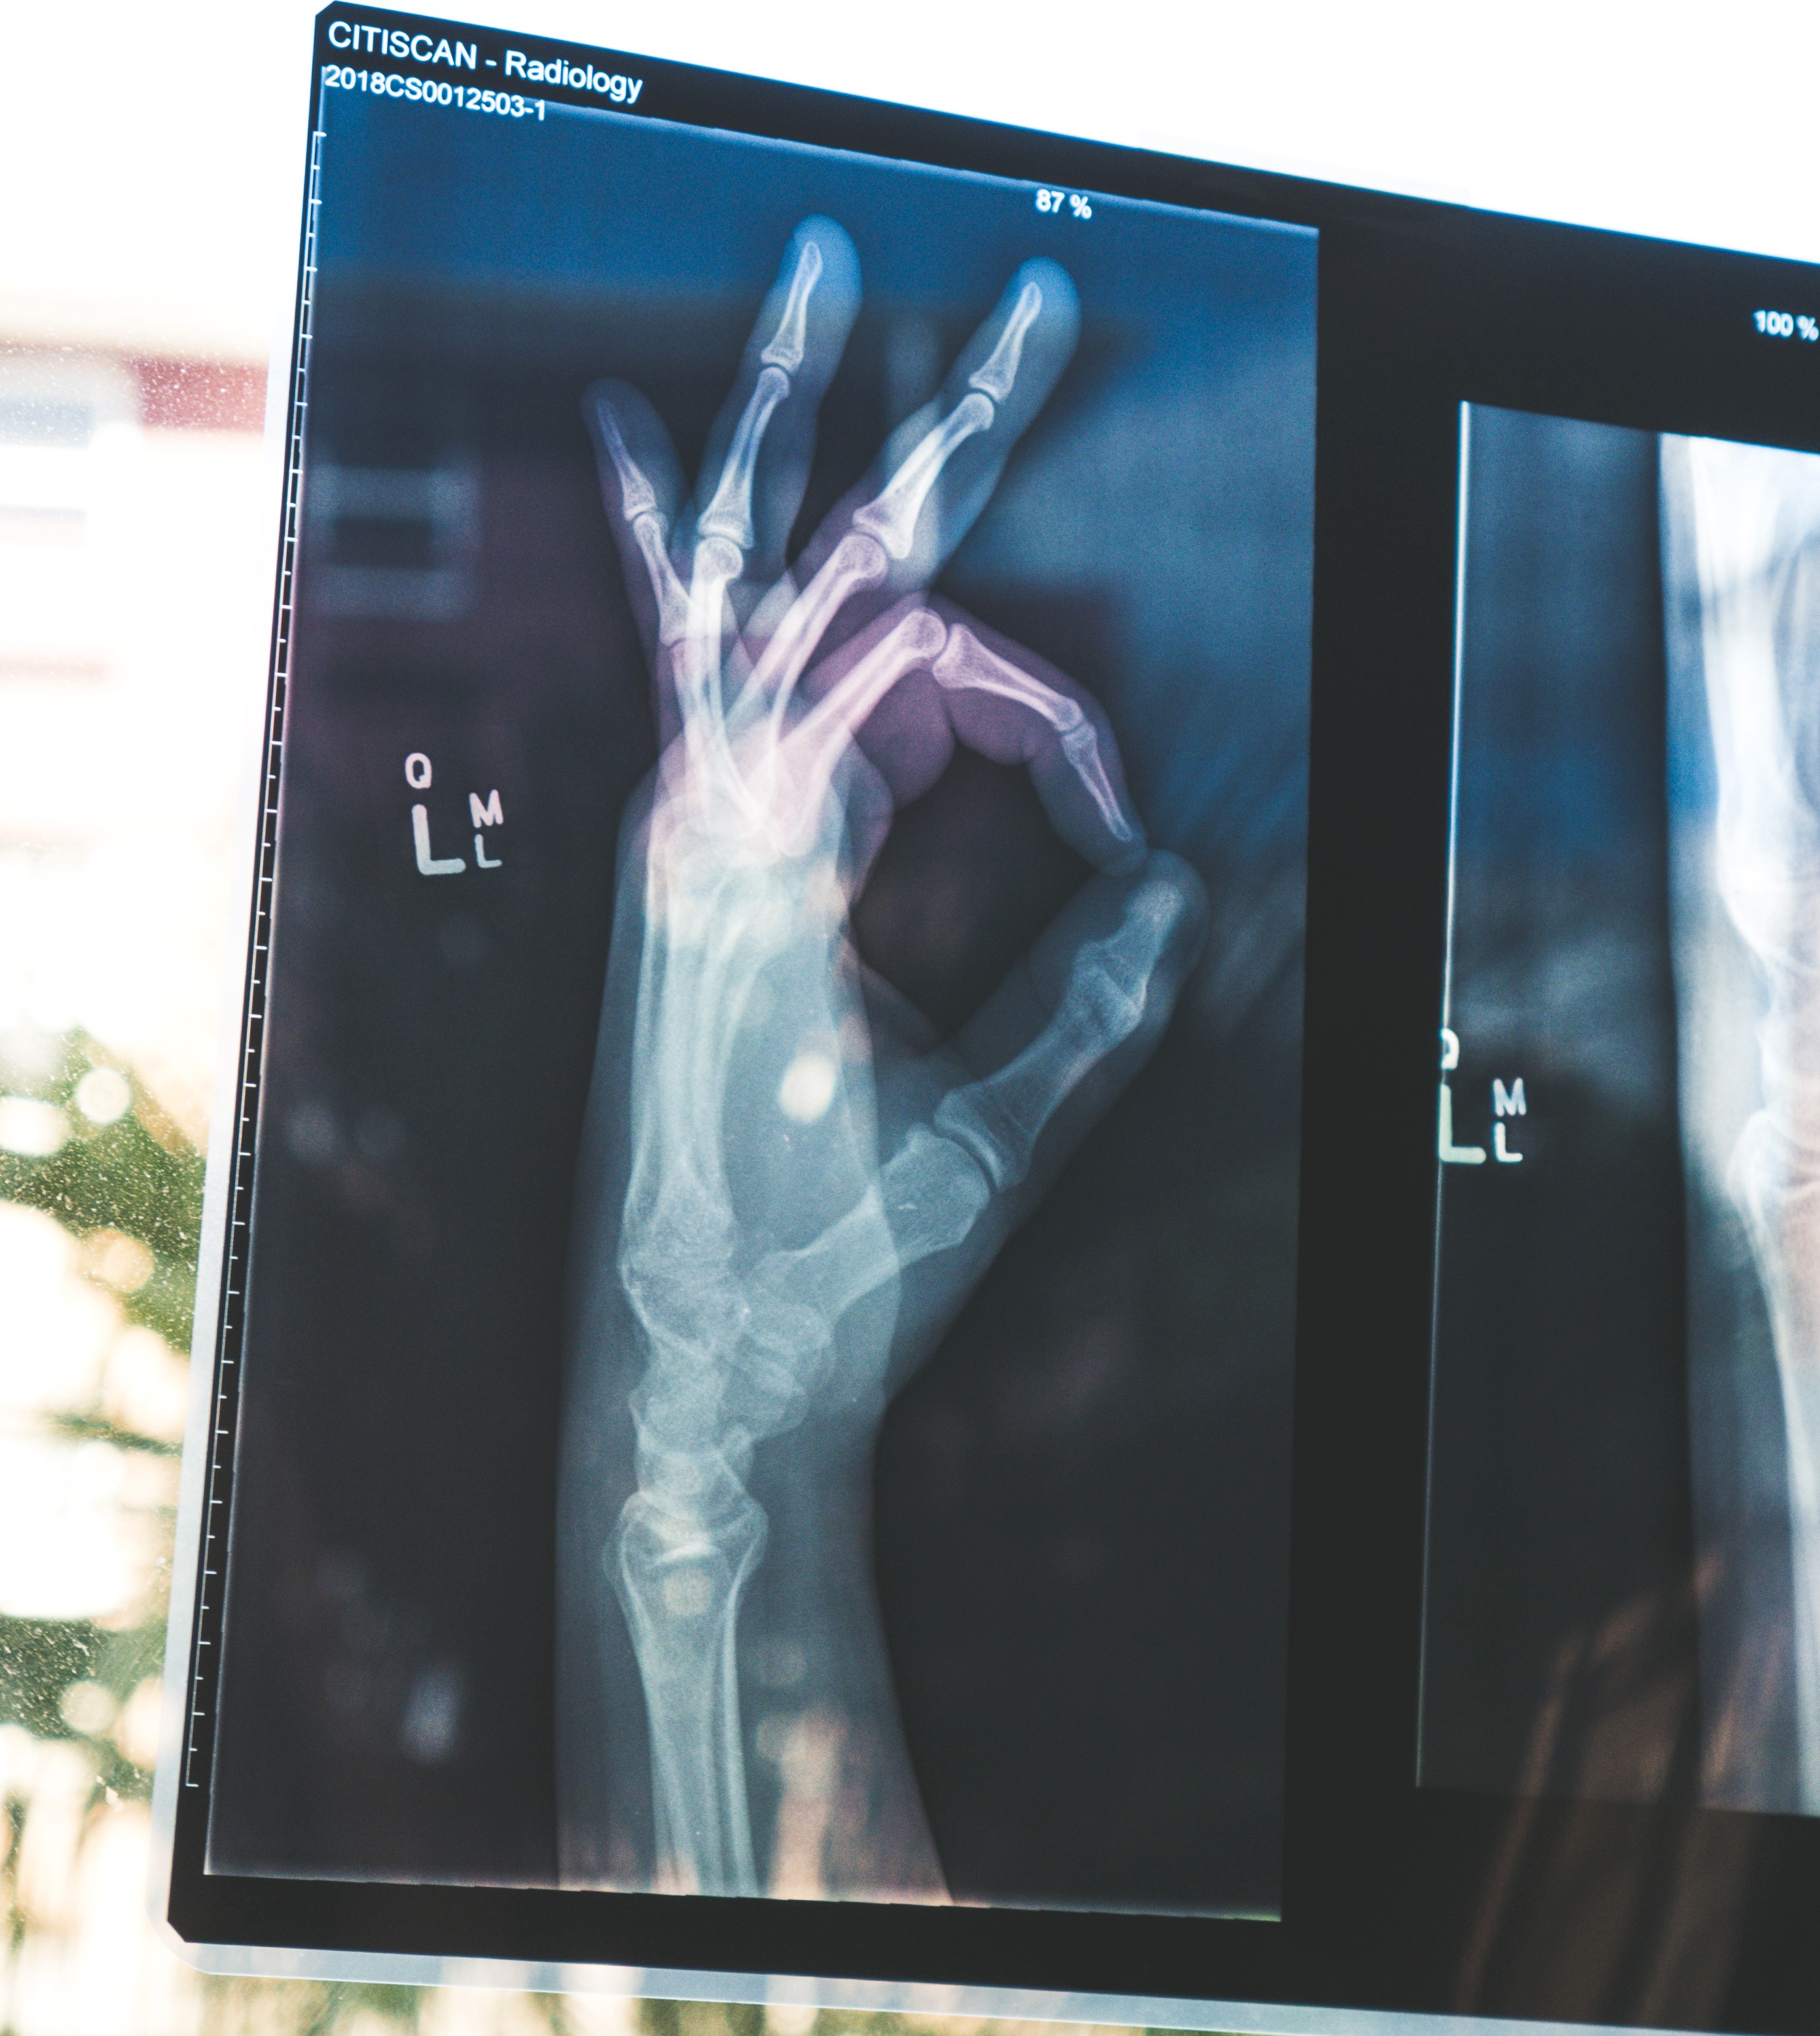 Röntgenbild einer Hand